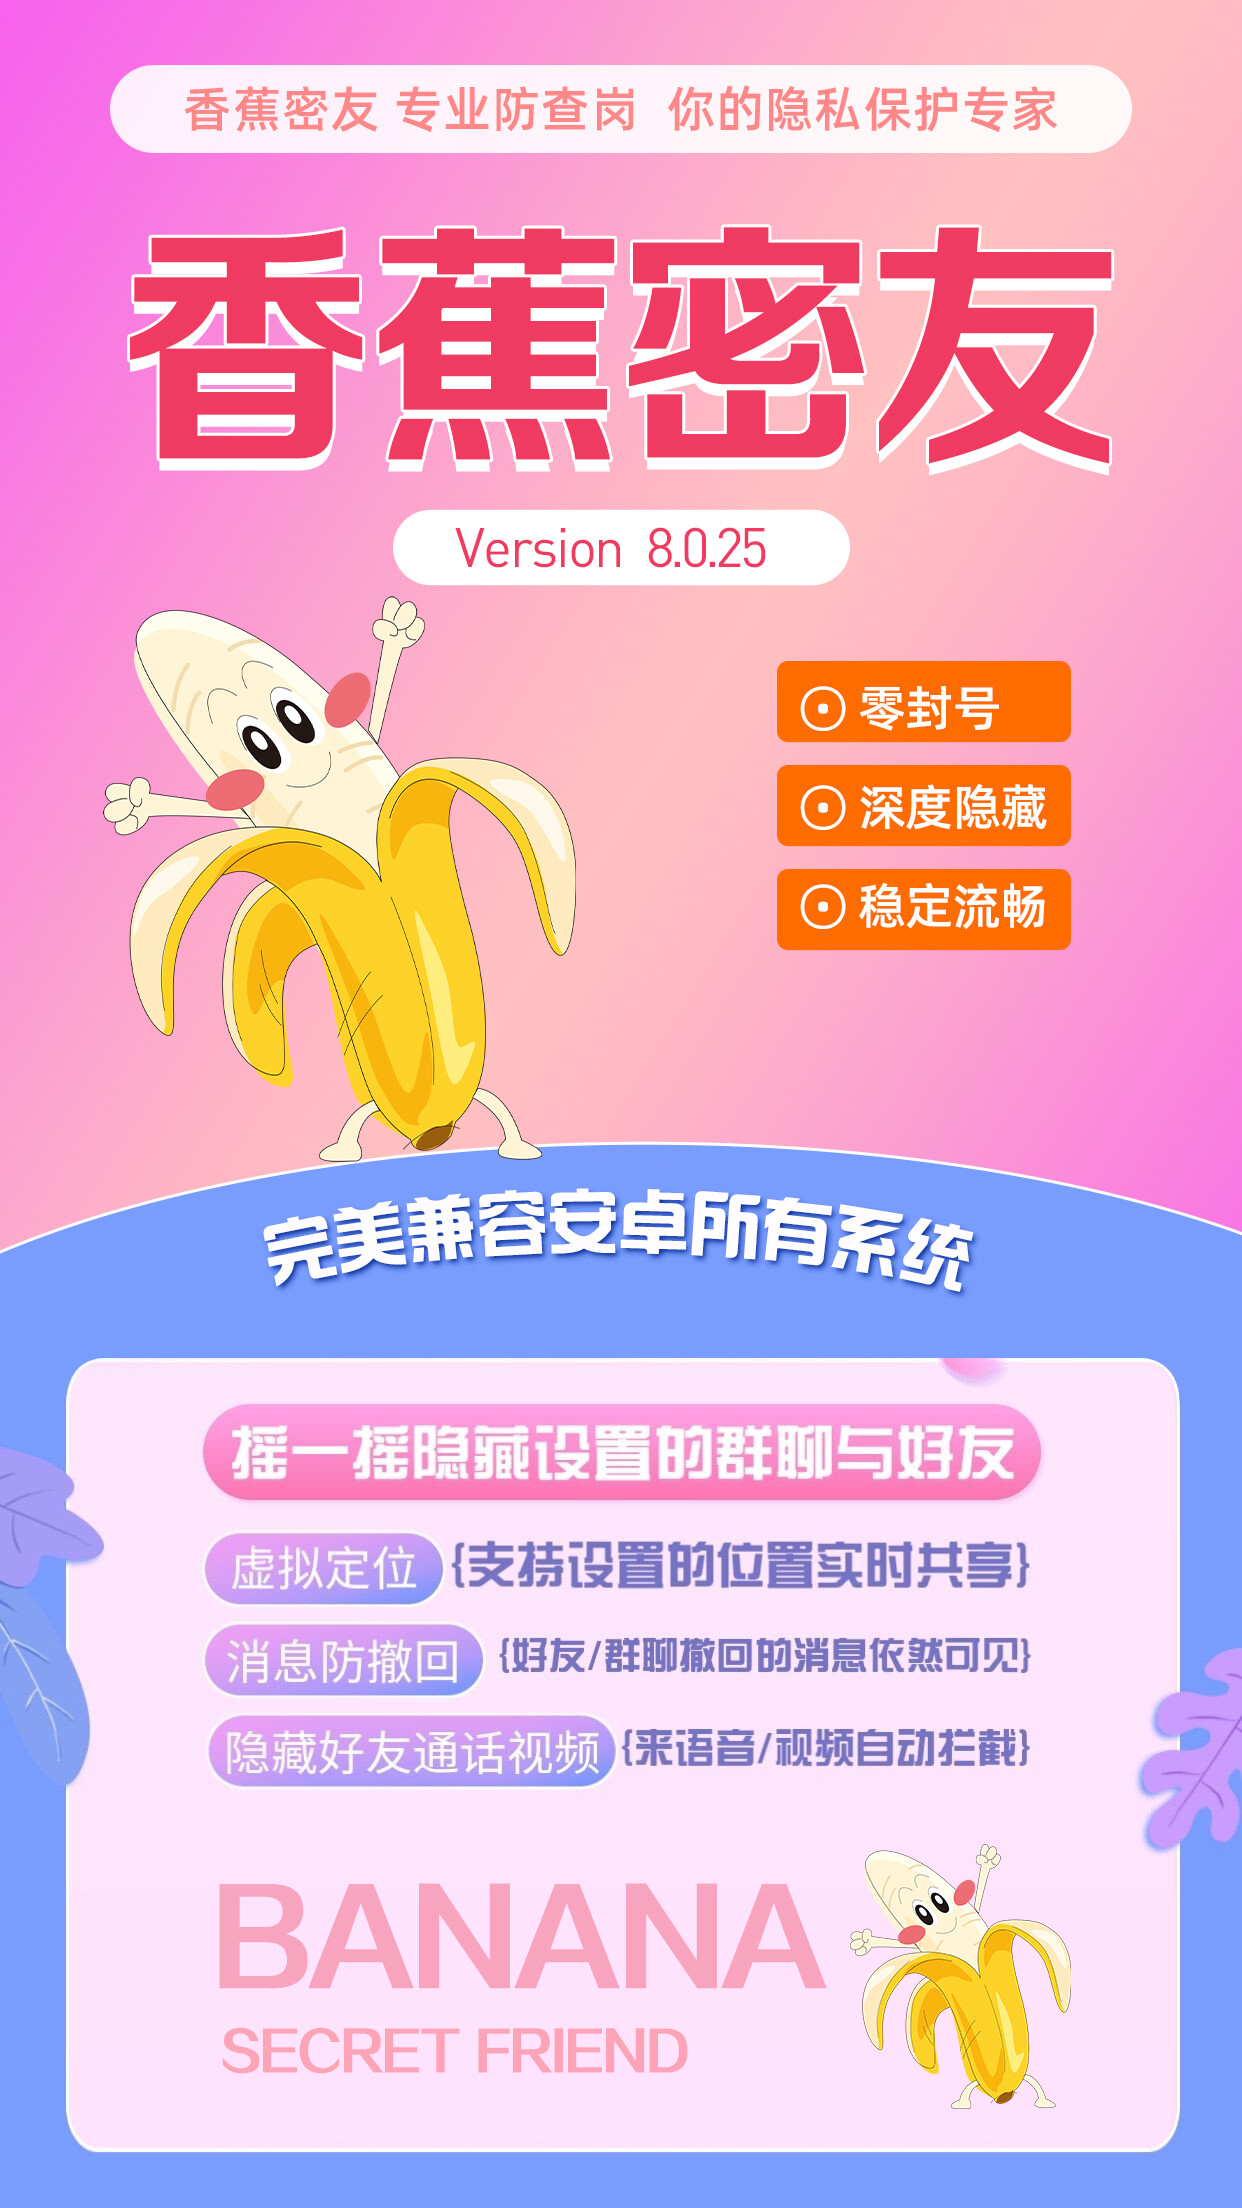 【免费体验】香蕉密友会封号吗,下载香蕉密友 第1张